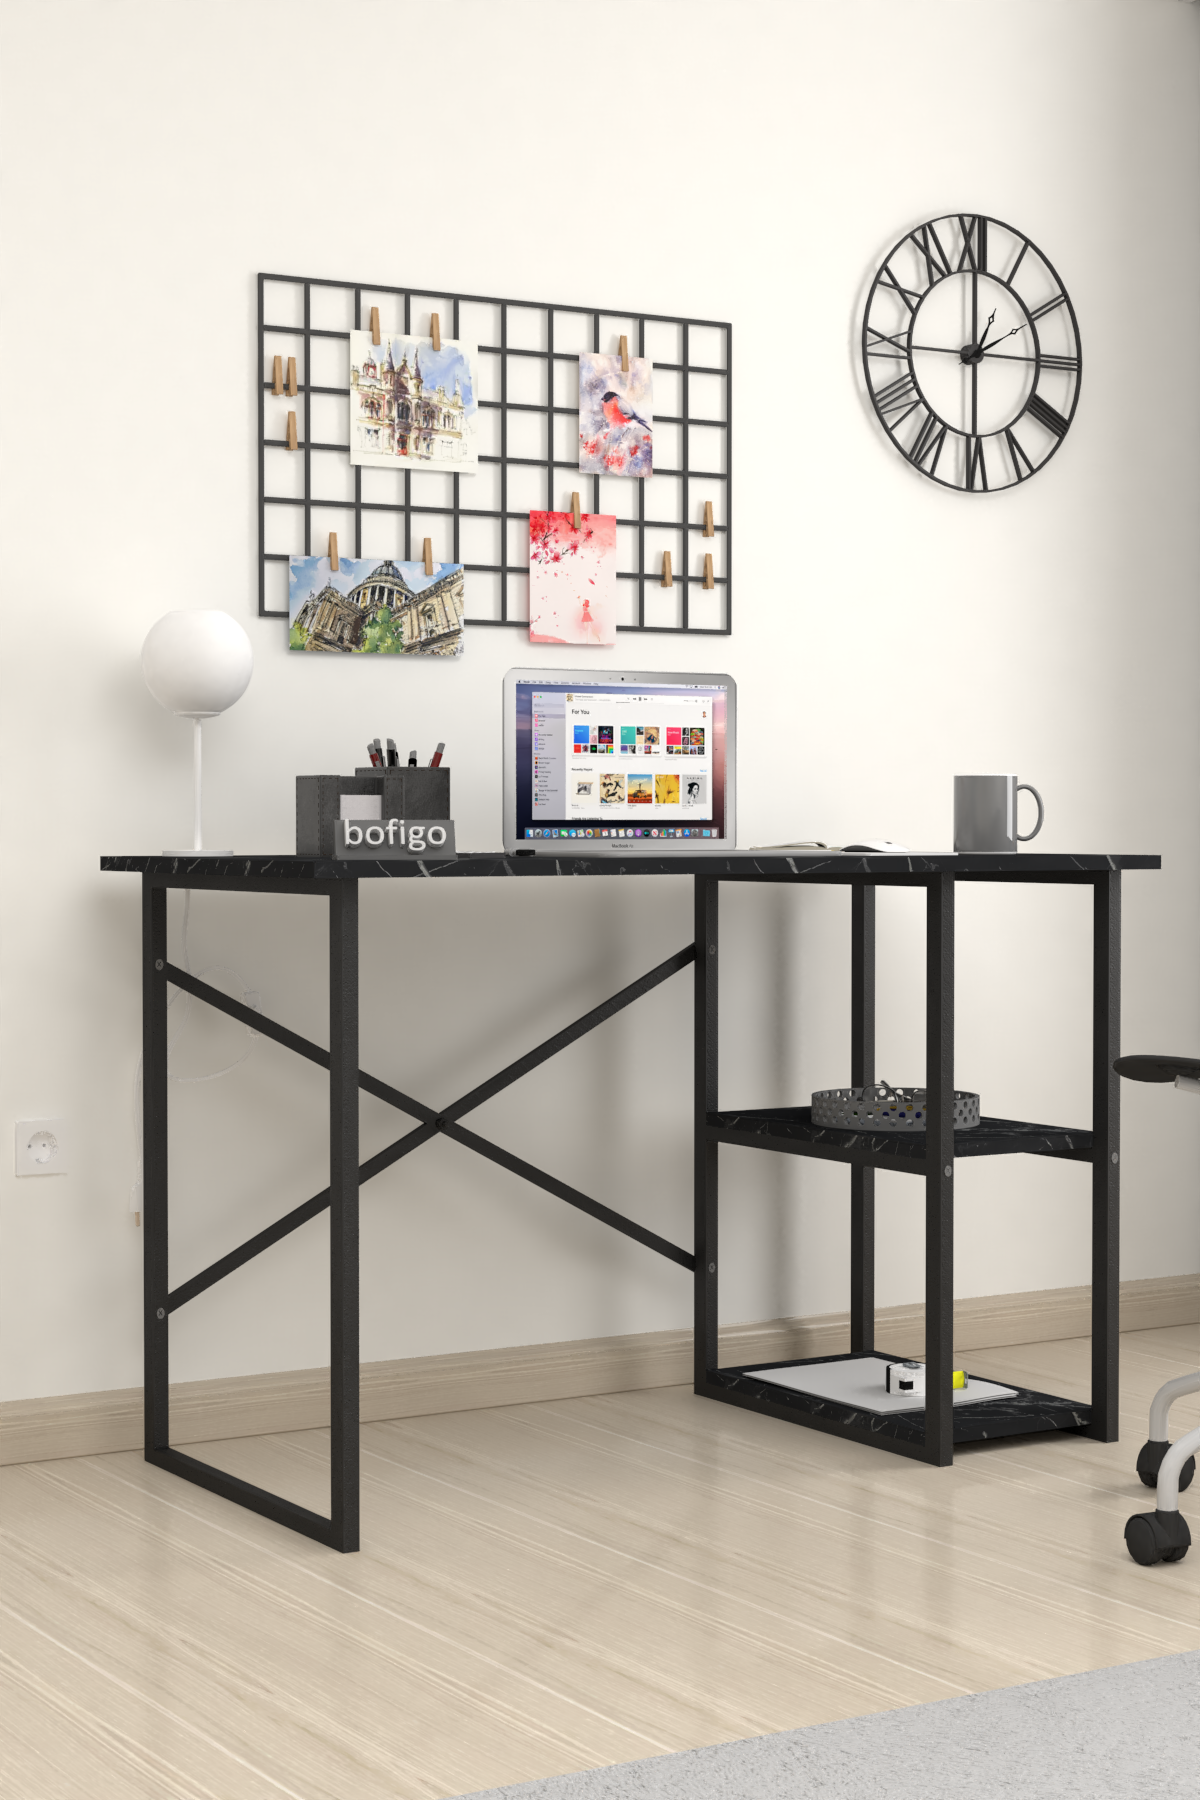 Bofigo 2 Shelf Desk 60x120 cm Bendir